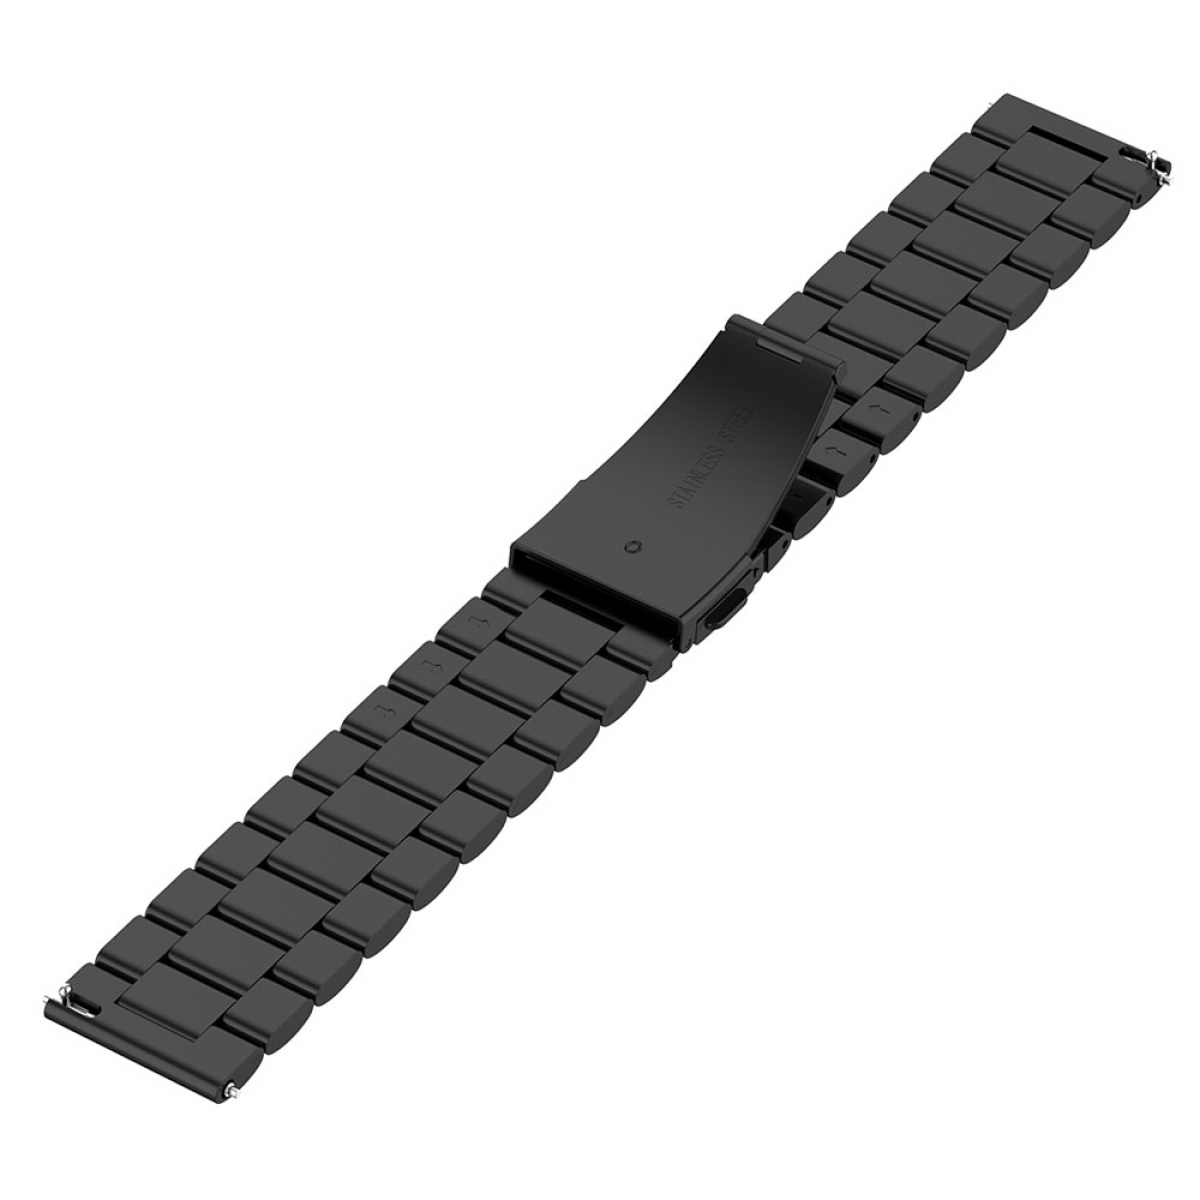 Edelstahl, Schwarz CASEONLINE Pro Watch Smartband, Galaxy 5 (45mm), Samsung,